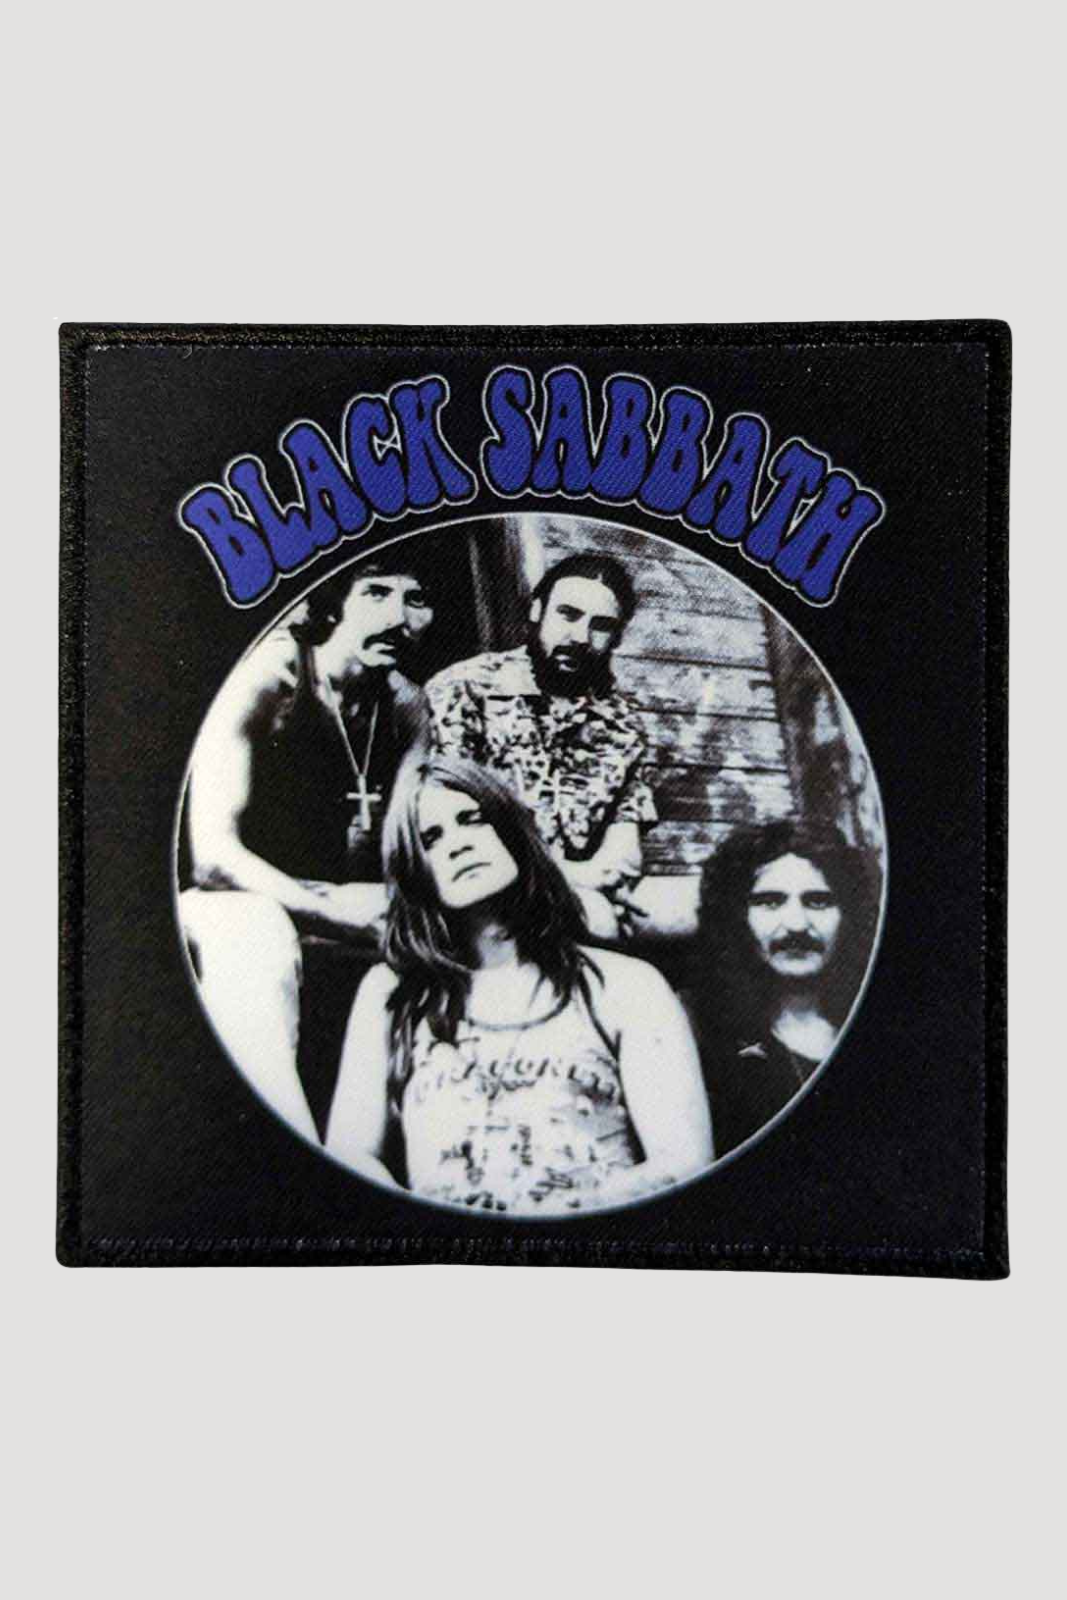 Black Sabbath Band Photo Patch